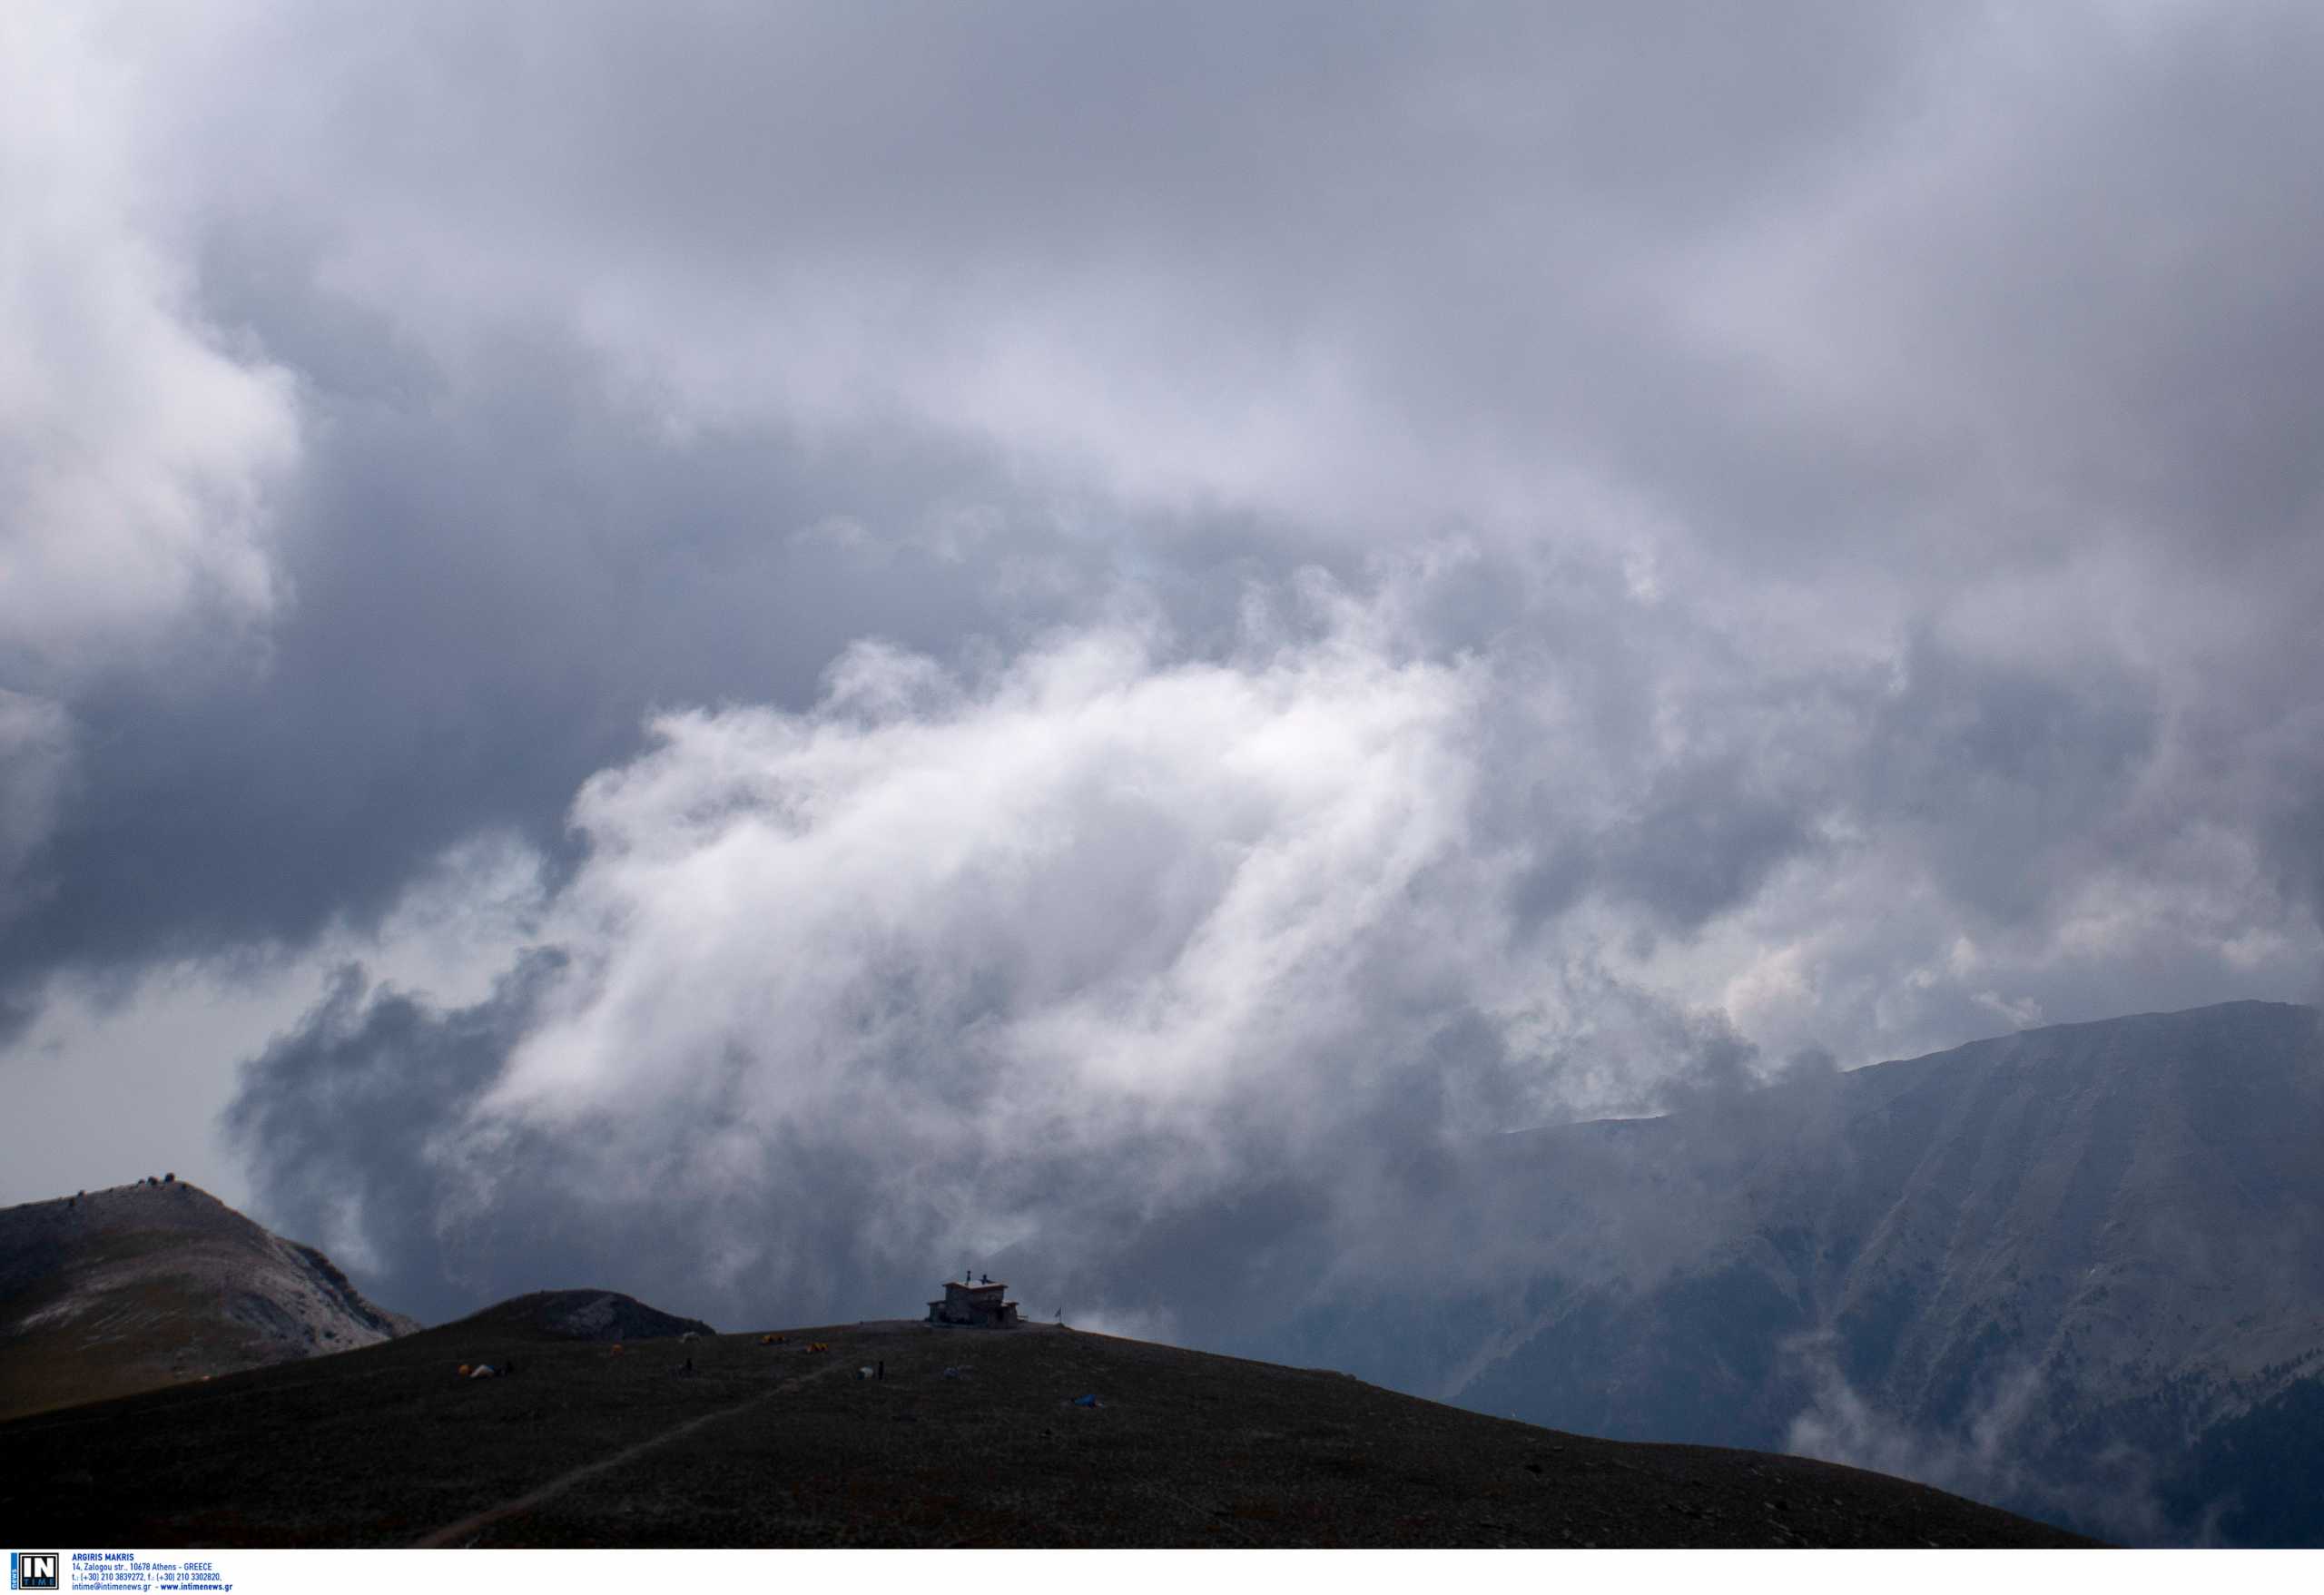 Τραγωδία στον Όλυμπο: Νεκροί οι δύο ορειβάτες από τη χιονοστιβάδα – Προσπαθούν να τους μεταφέρουν